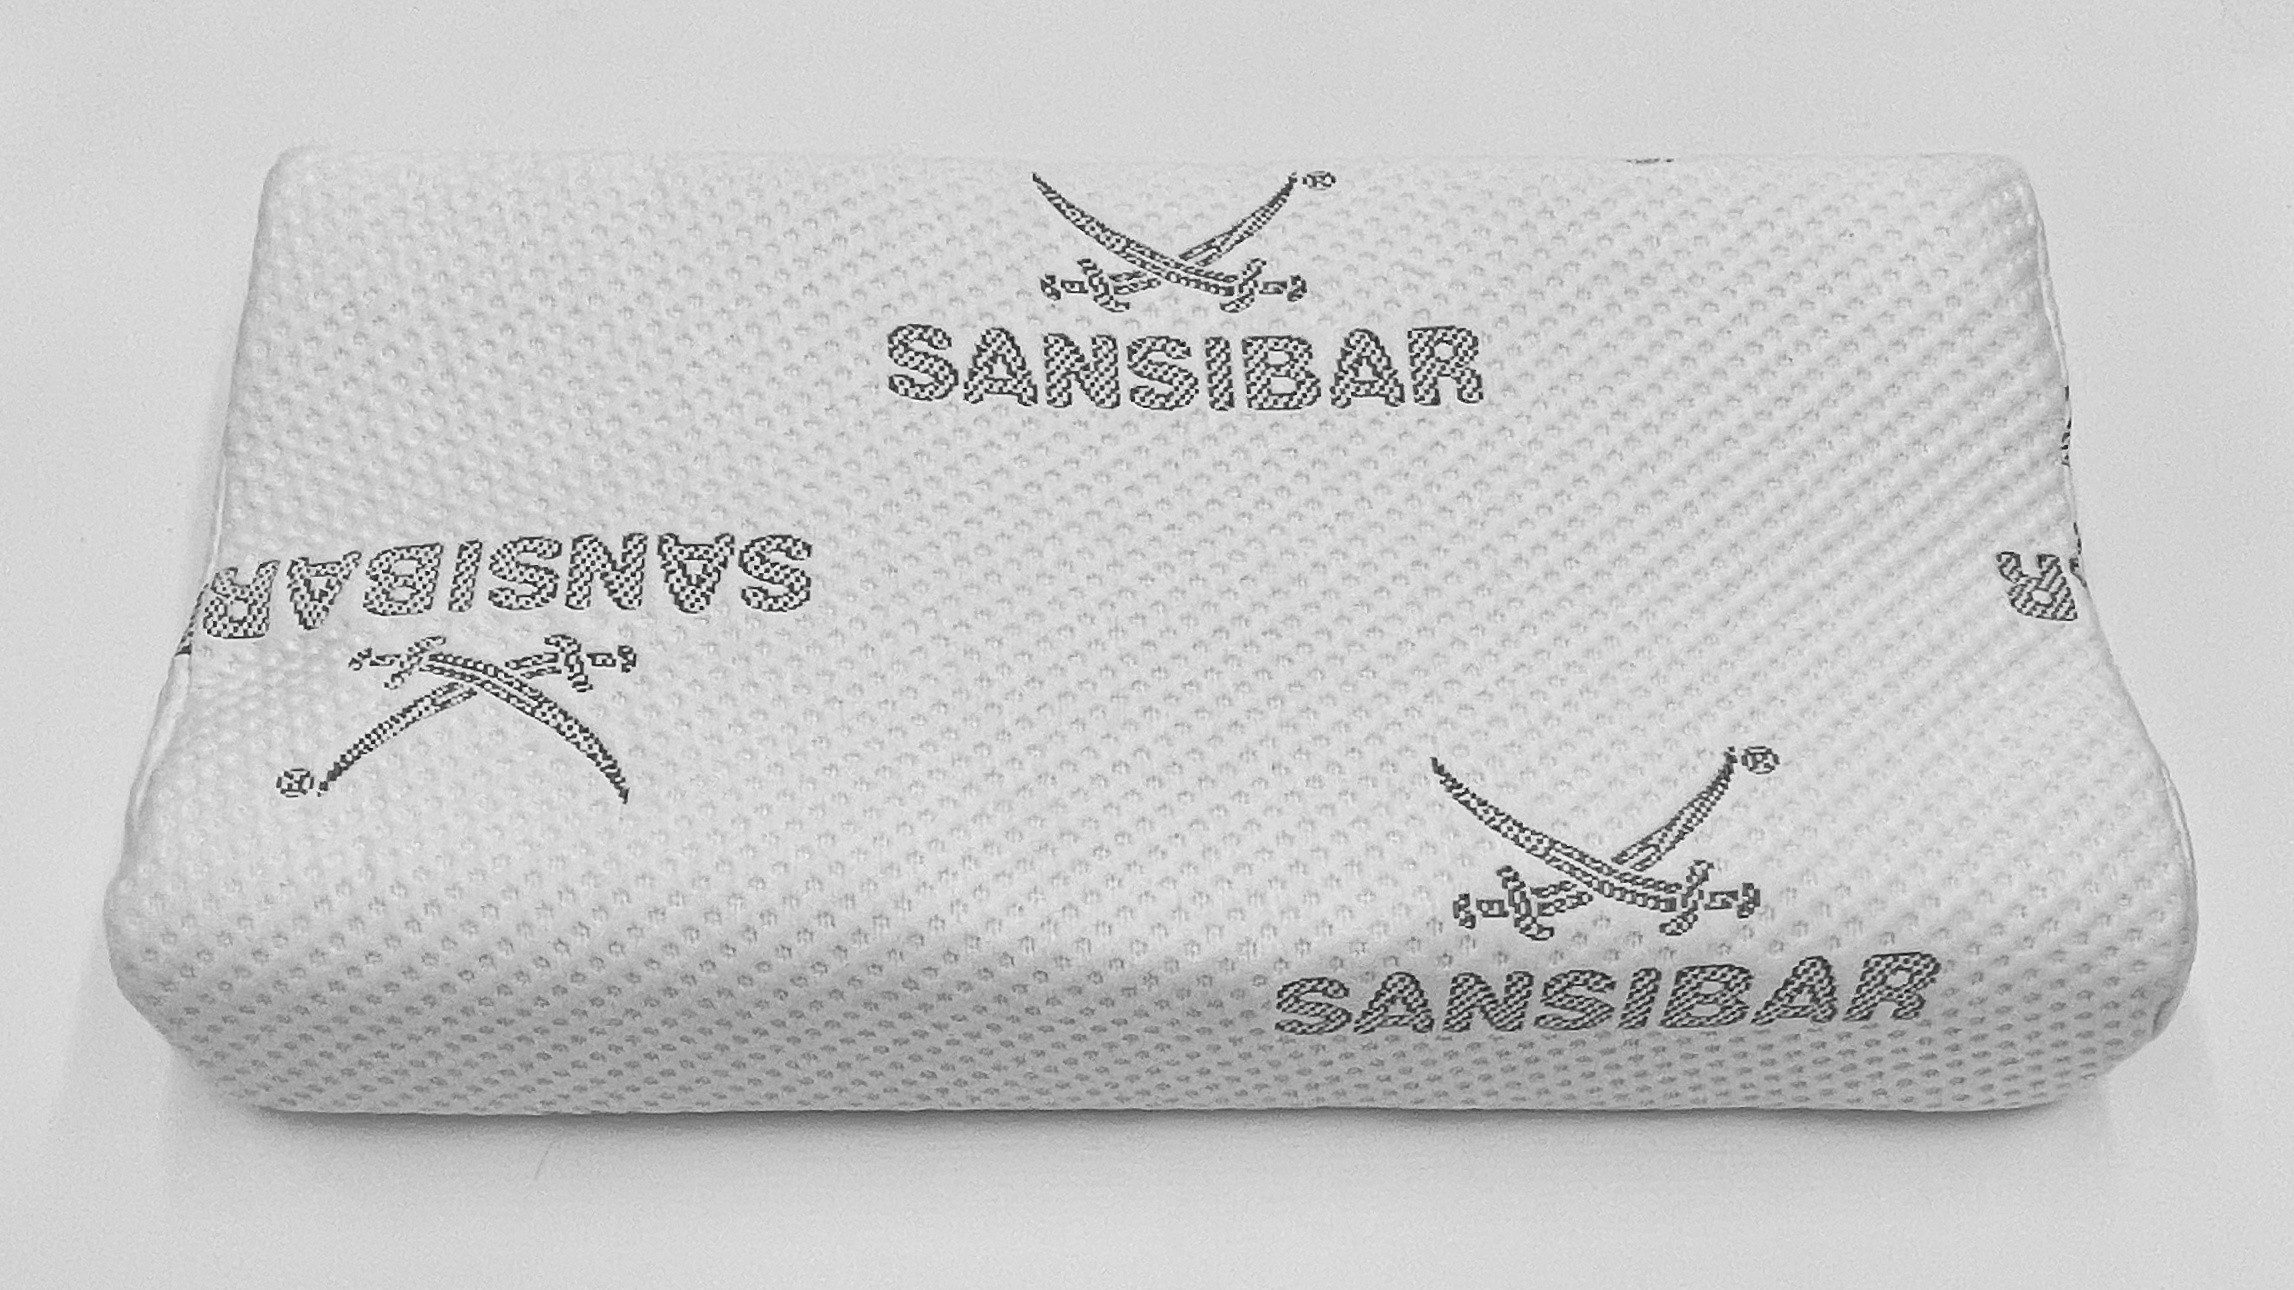 Sansibar Sylt Kopfstützkissen Nackenstützkissen SANSIBAR (BL 60x30 cm) BL 60x30 cm weiß